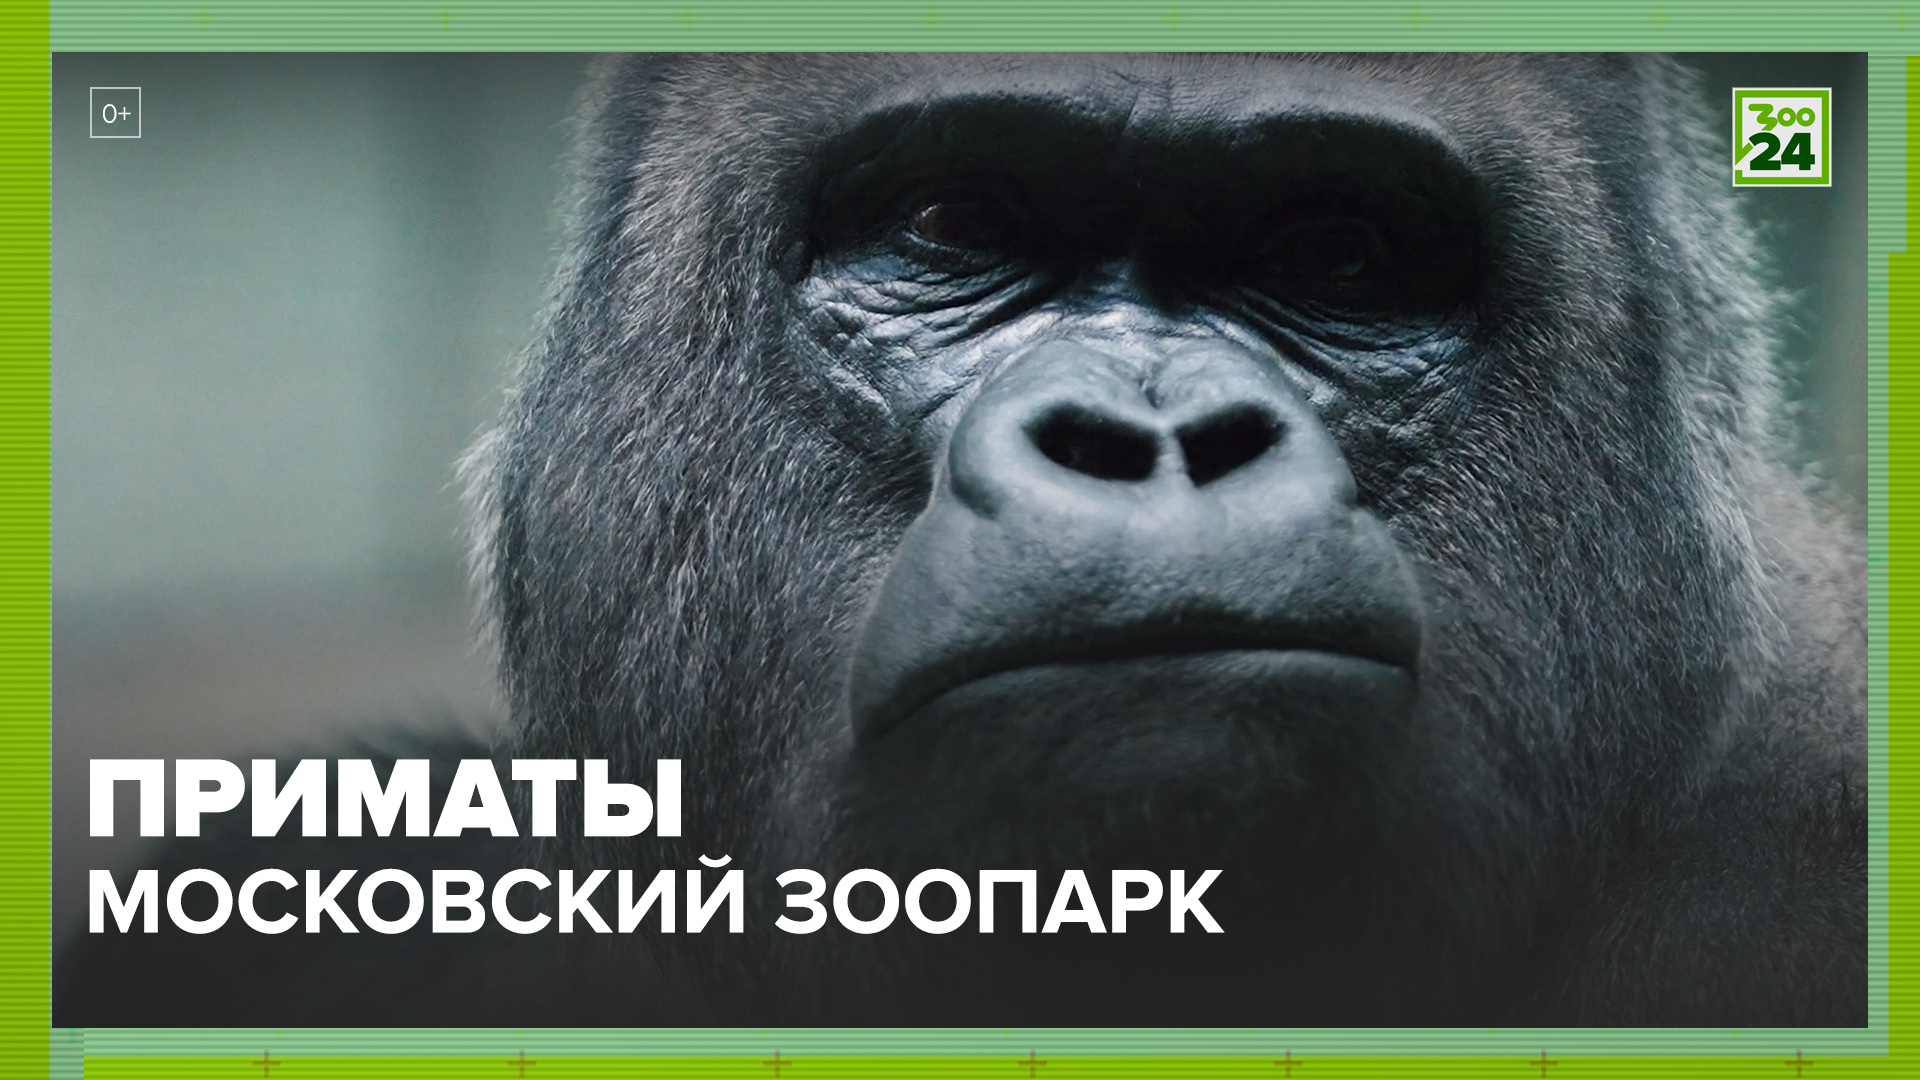 Приматы | Московский зоопарк | ЗОО 24